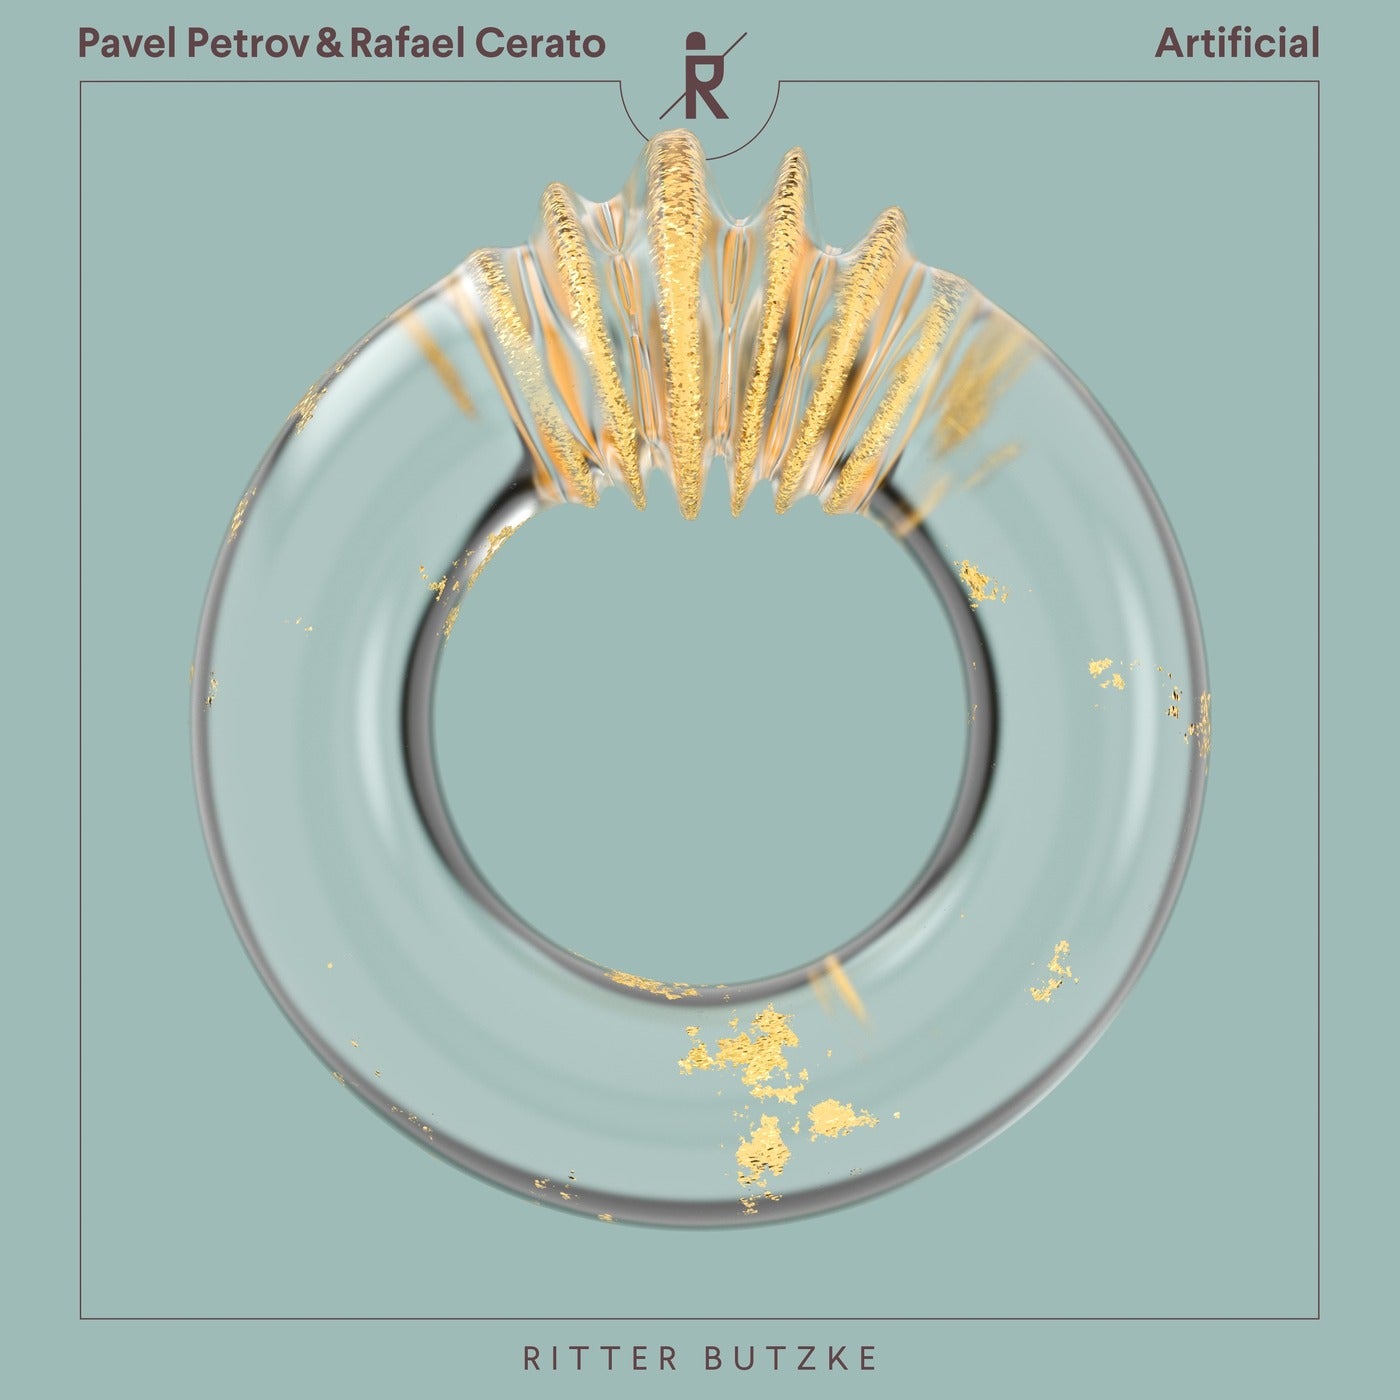 Pavel Petrov, Rafael Cerato – Artificial [RBR206]